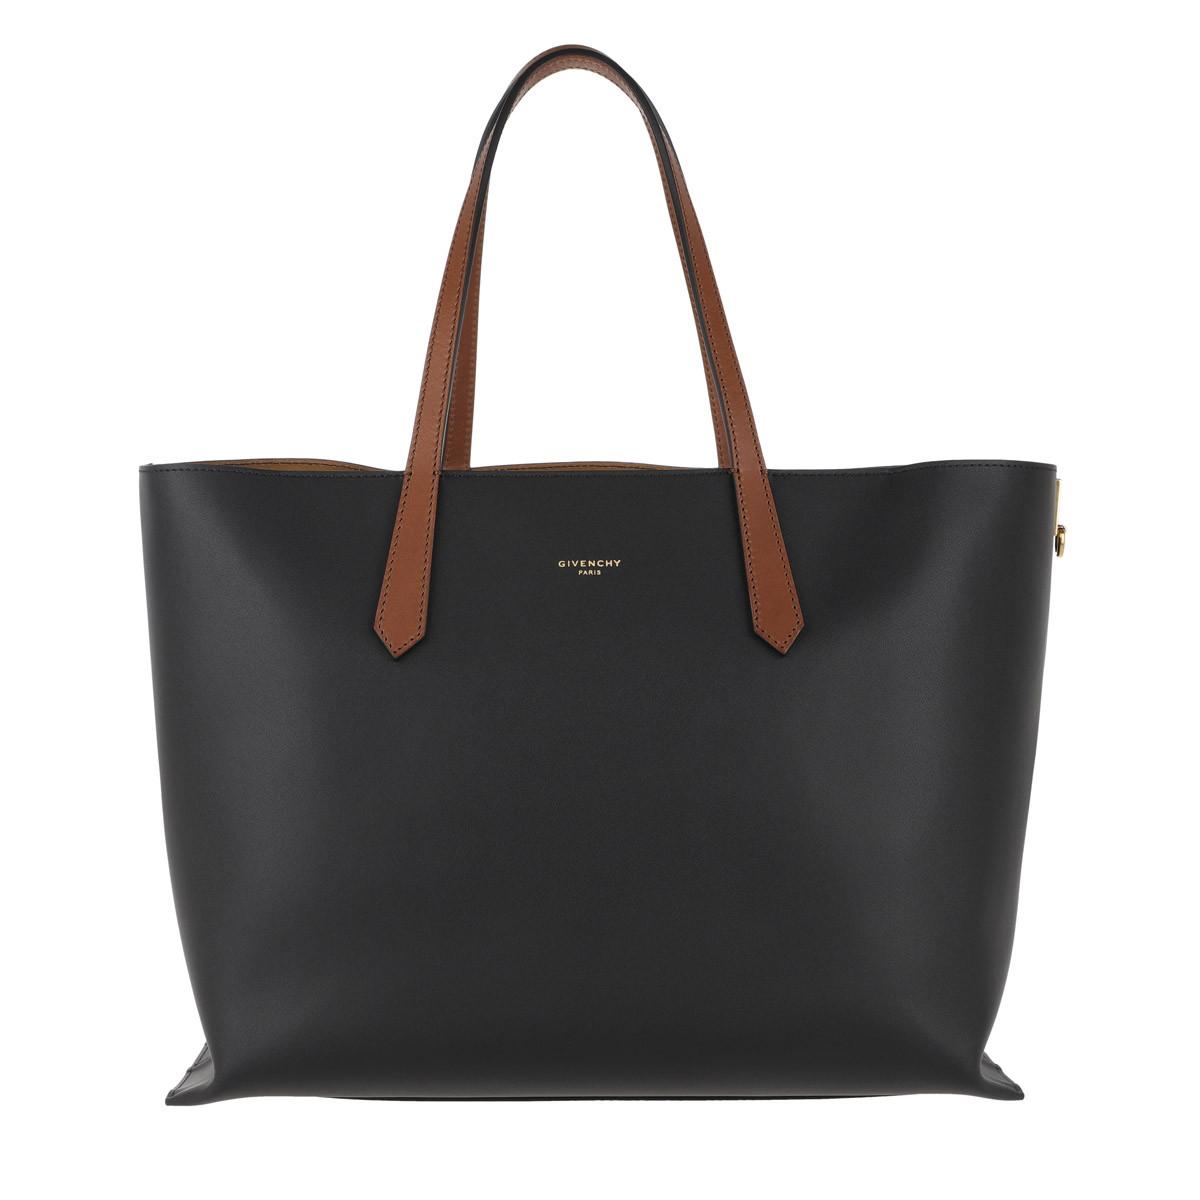 Givenchy GV Shopper Tote Bag Black at 